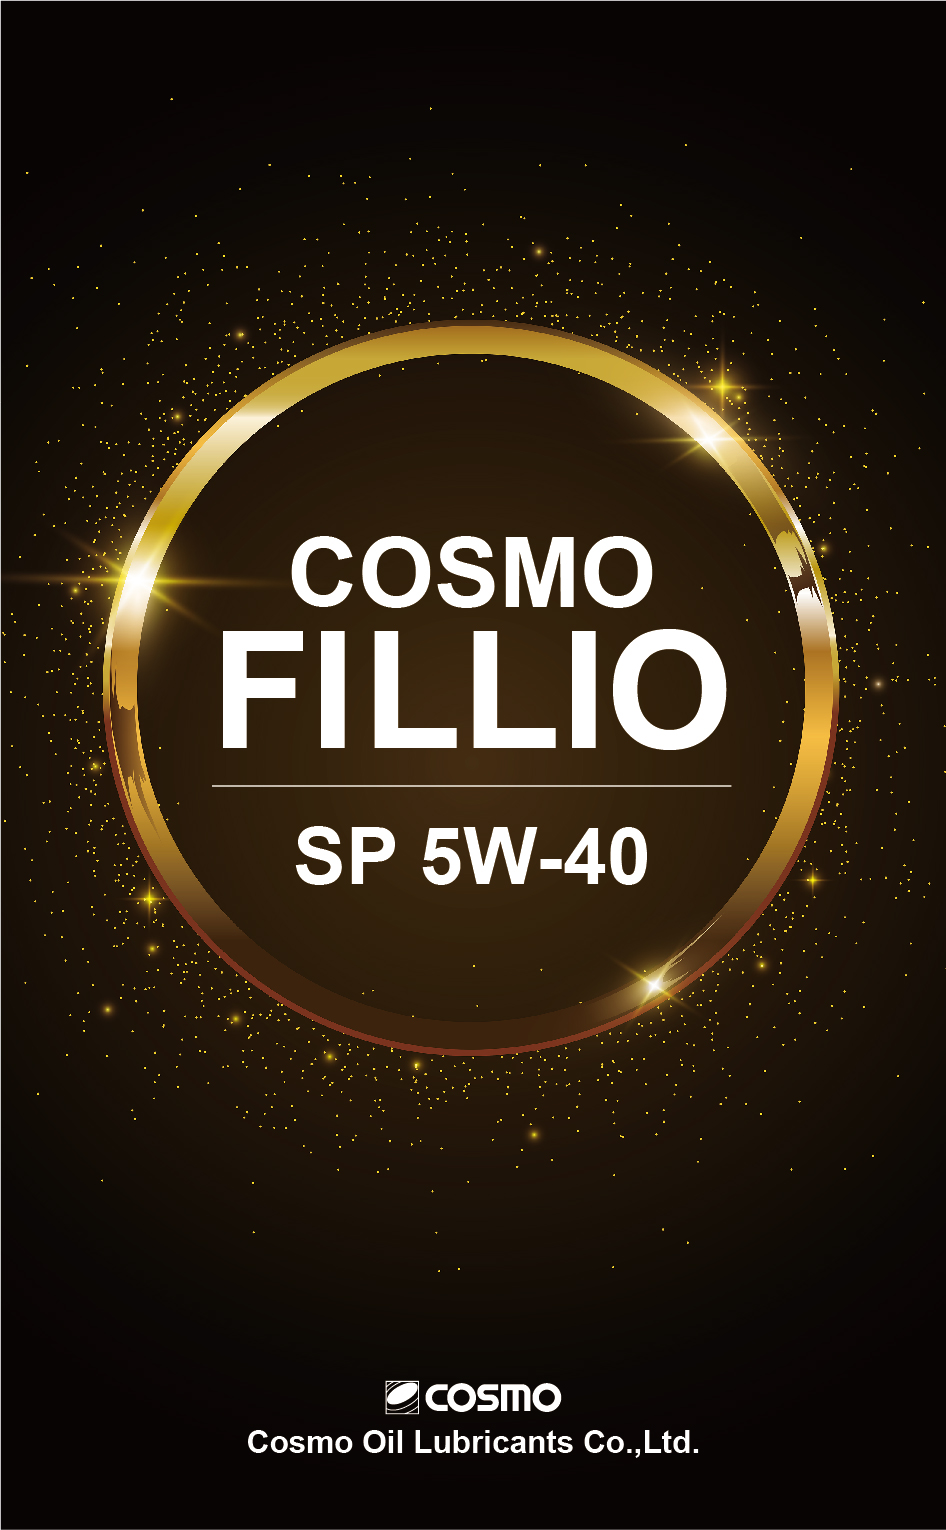 COSMO FILLIO SP 5W-40